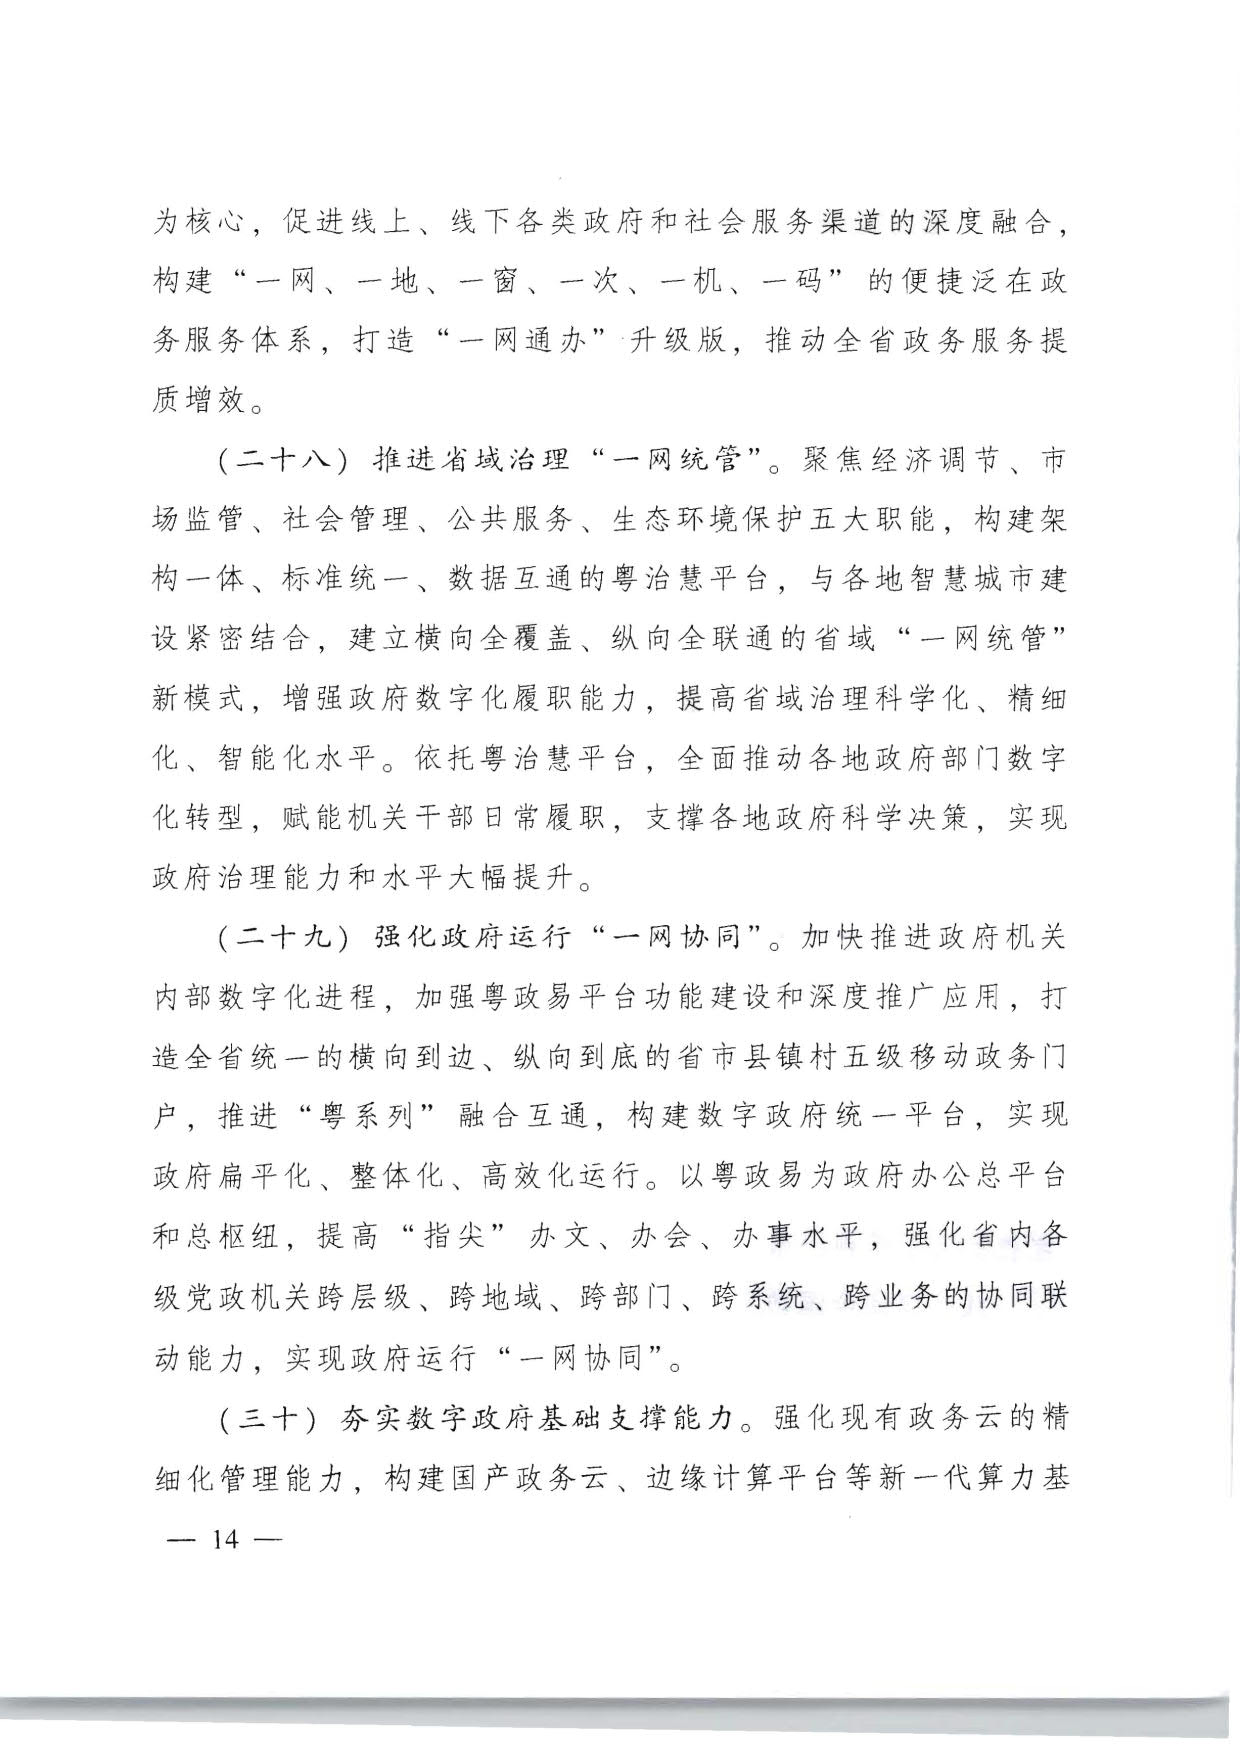 广东省人民政府关于加快数字化发展的意见_14.jpg